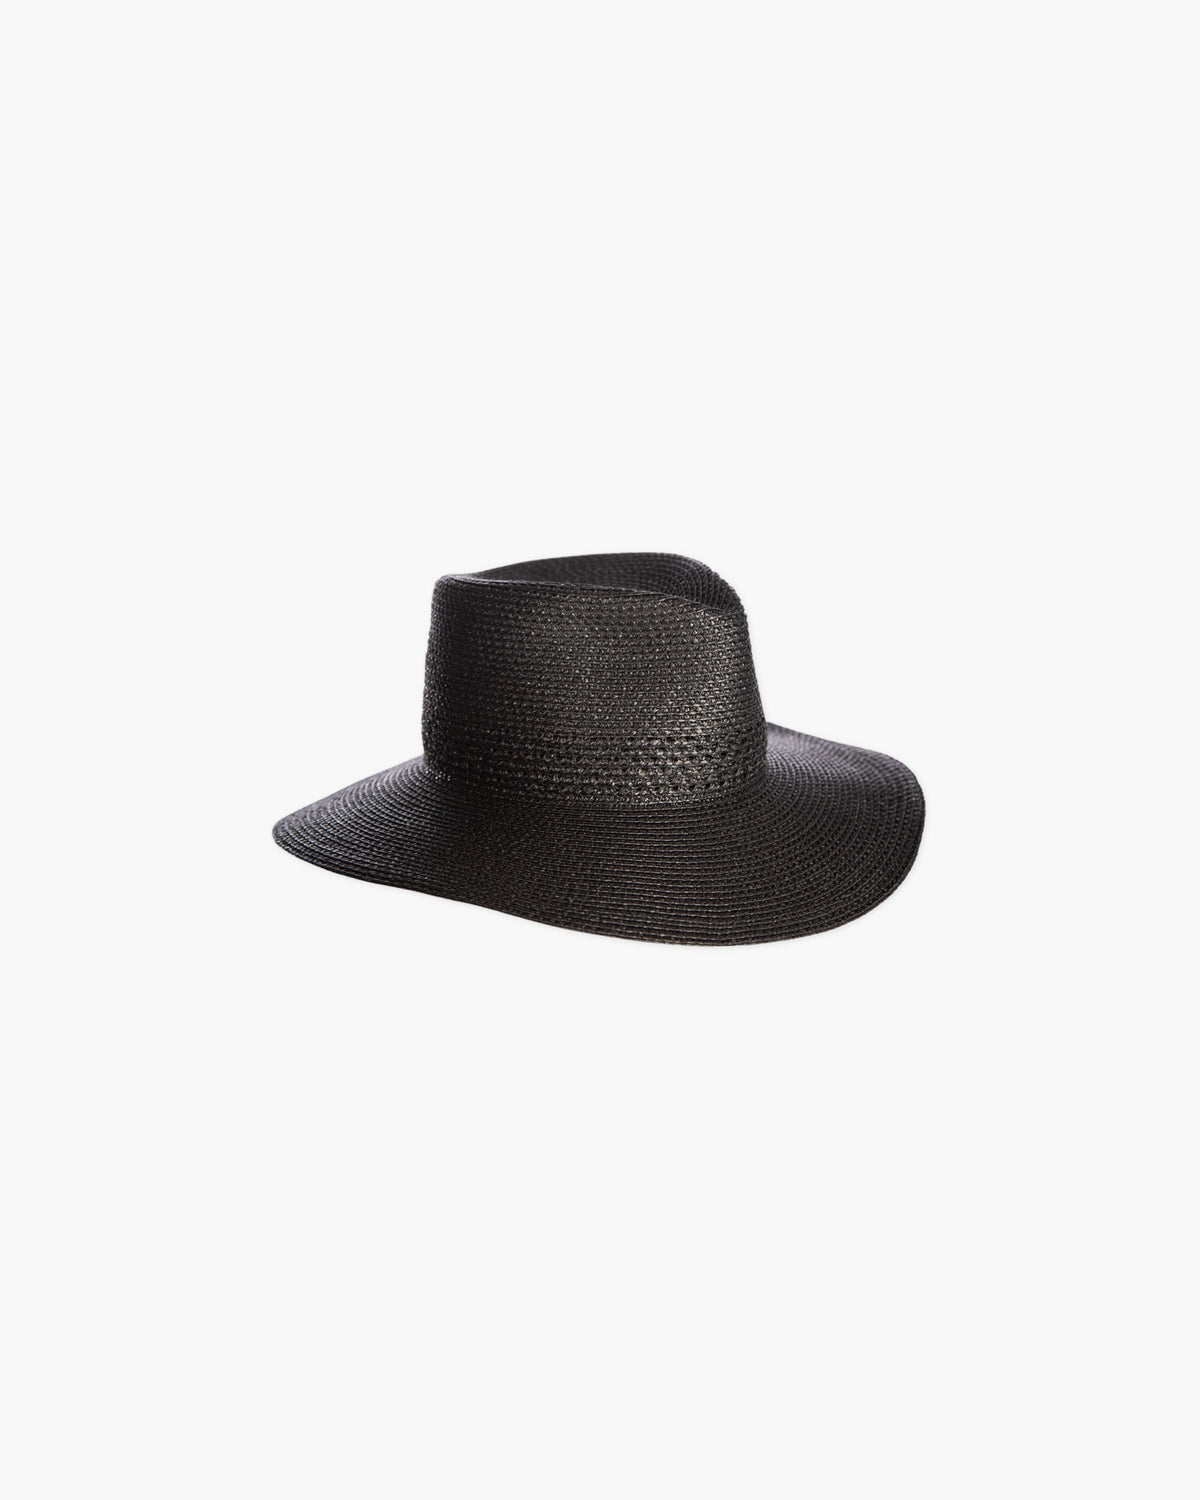 Take Cover Straw Hat in Black